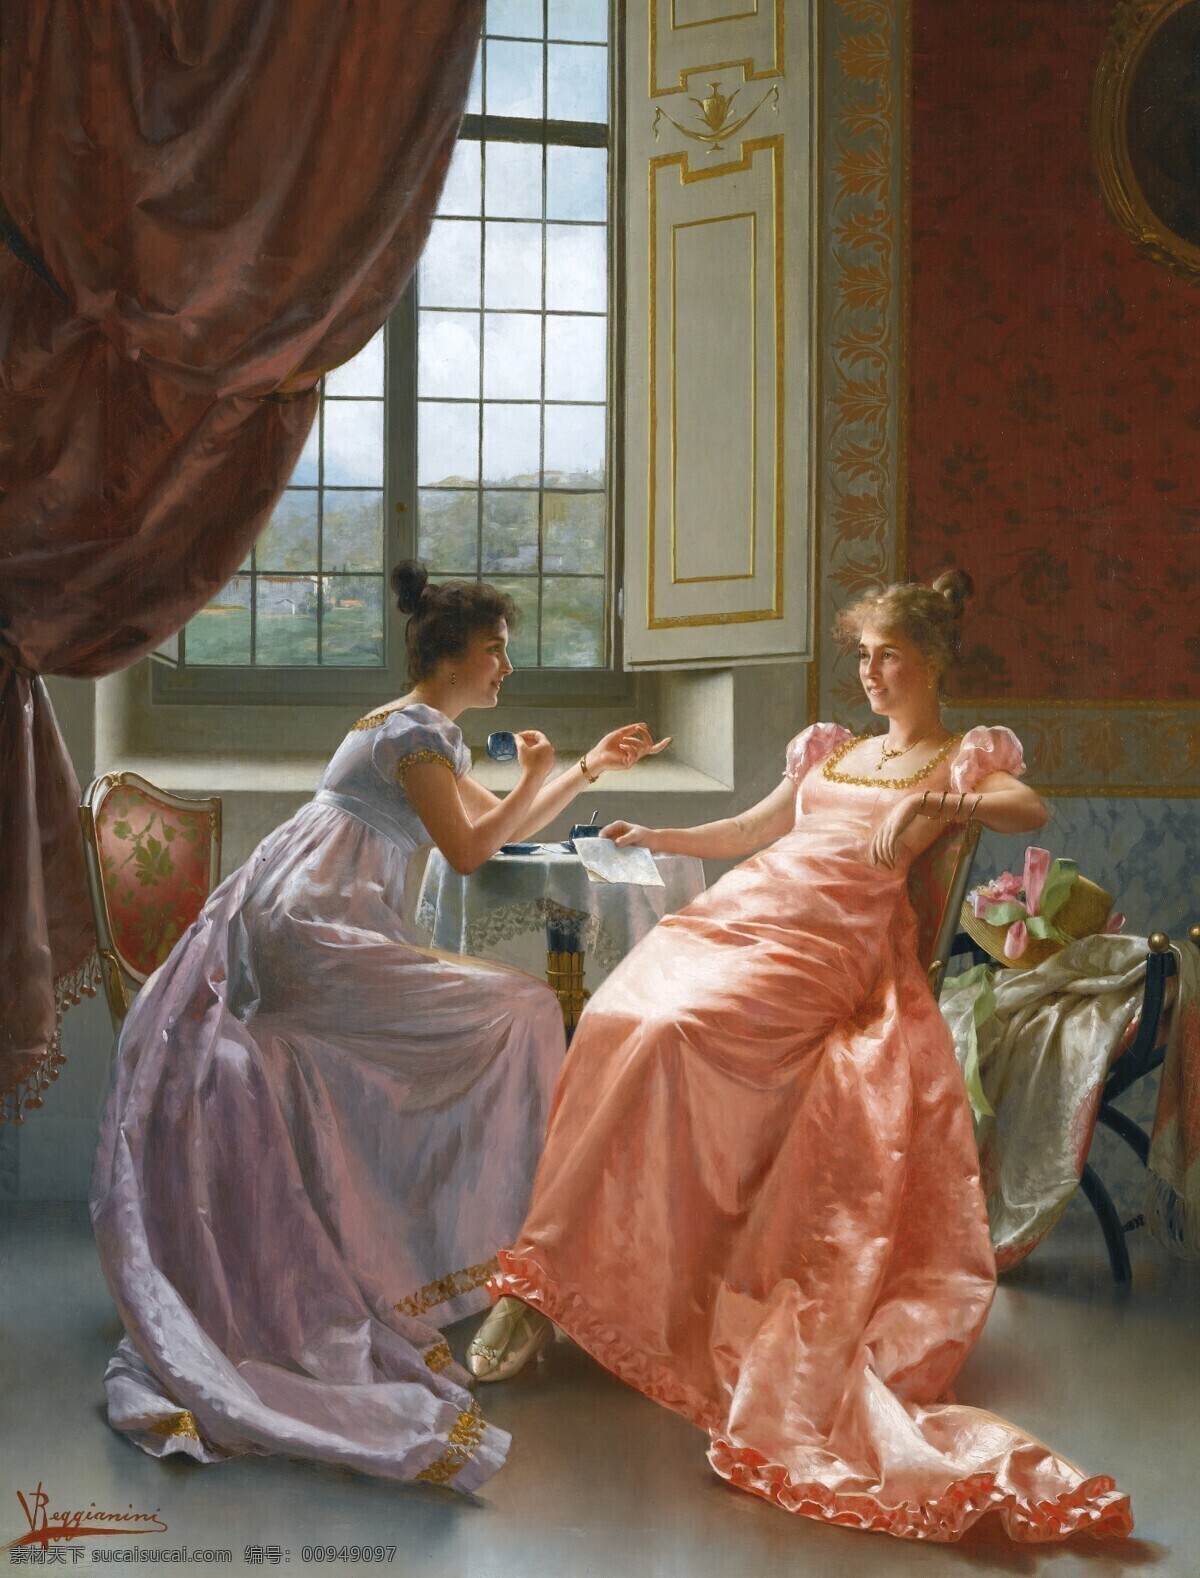 人物油画 闺密 贵族之家 女孩 人物 窗户 19世纪油画 油画 绘画书法 文化艺术